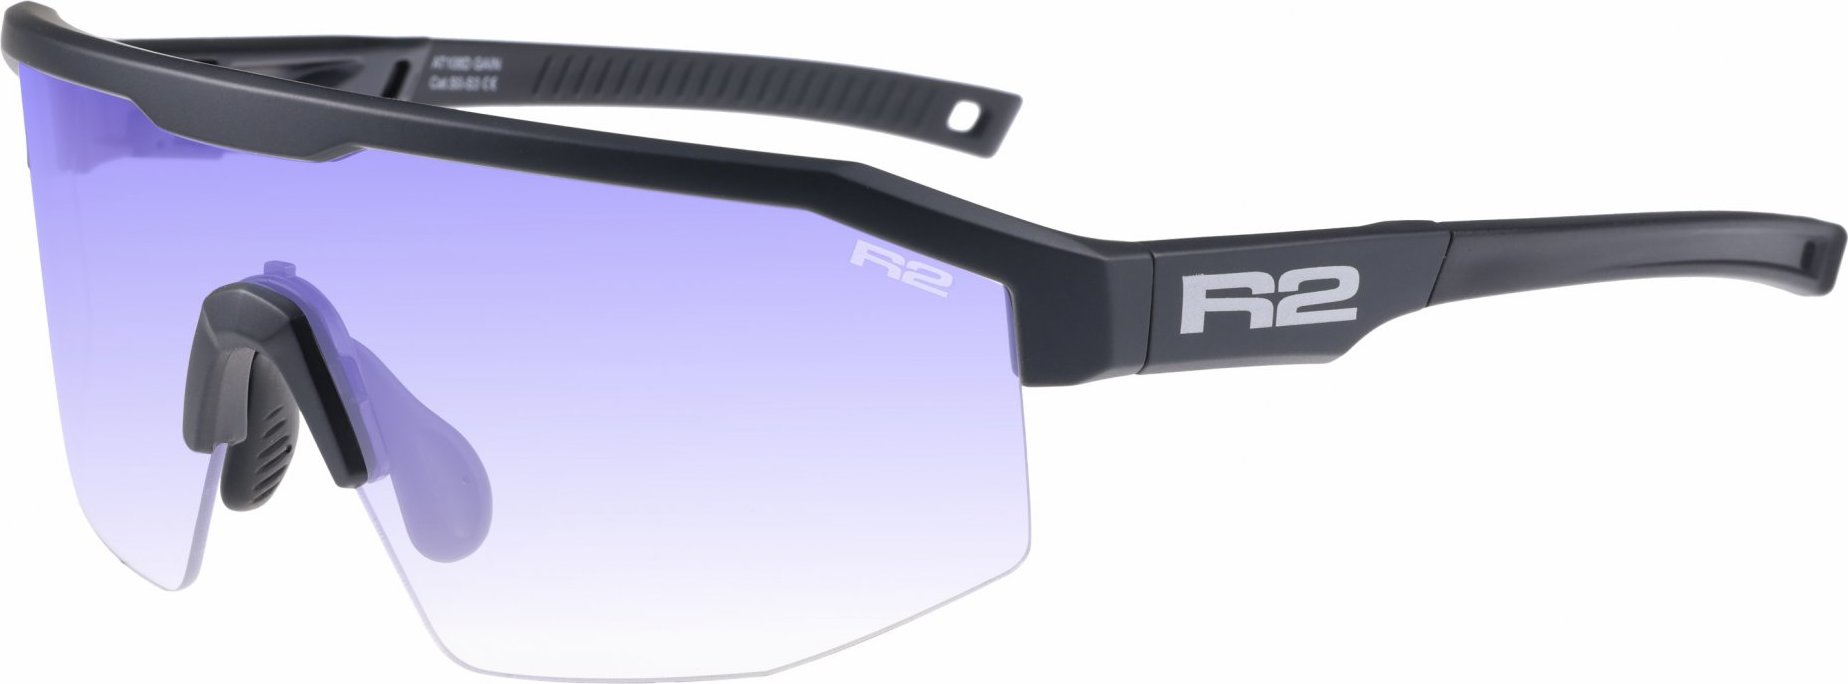 Sportovní sluneční brýle R2 Gain černé